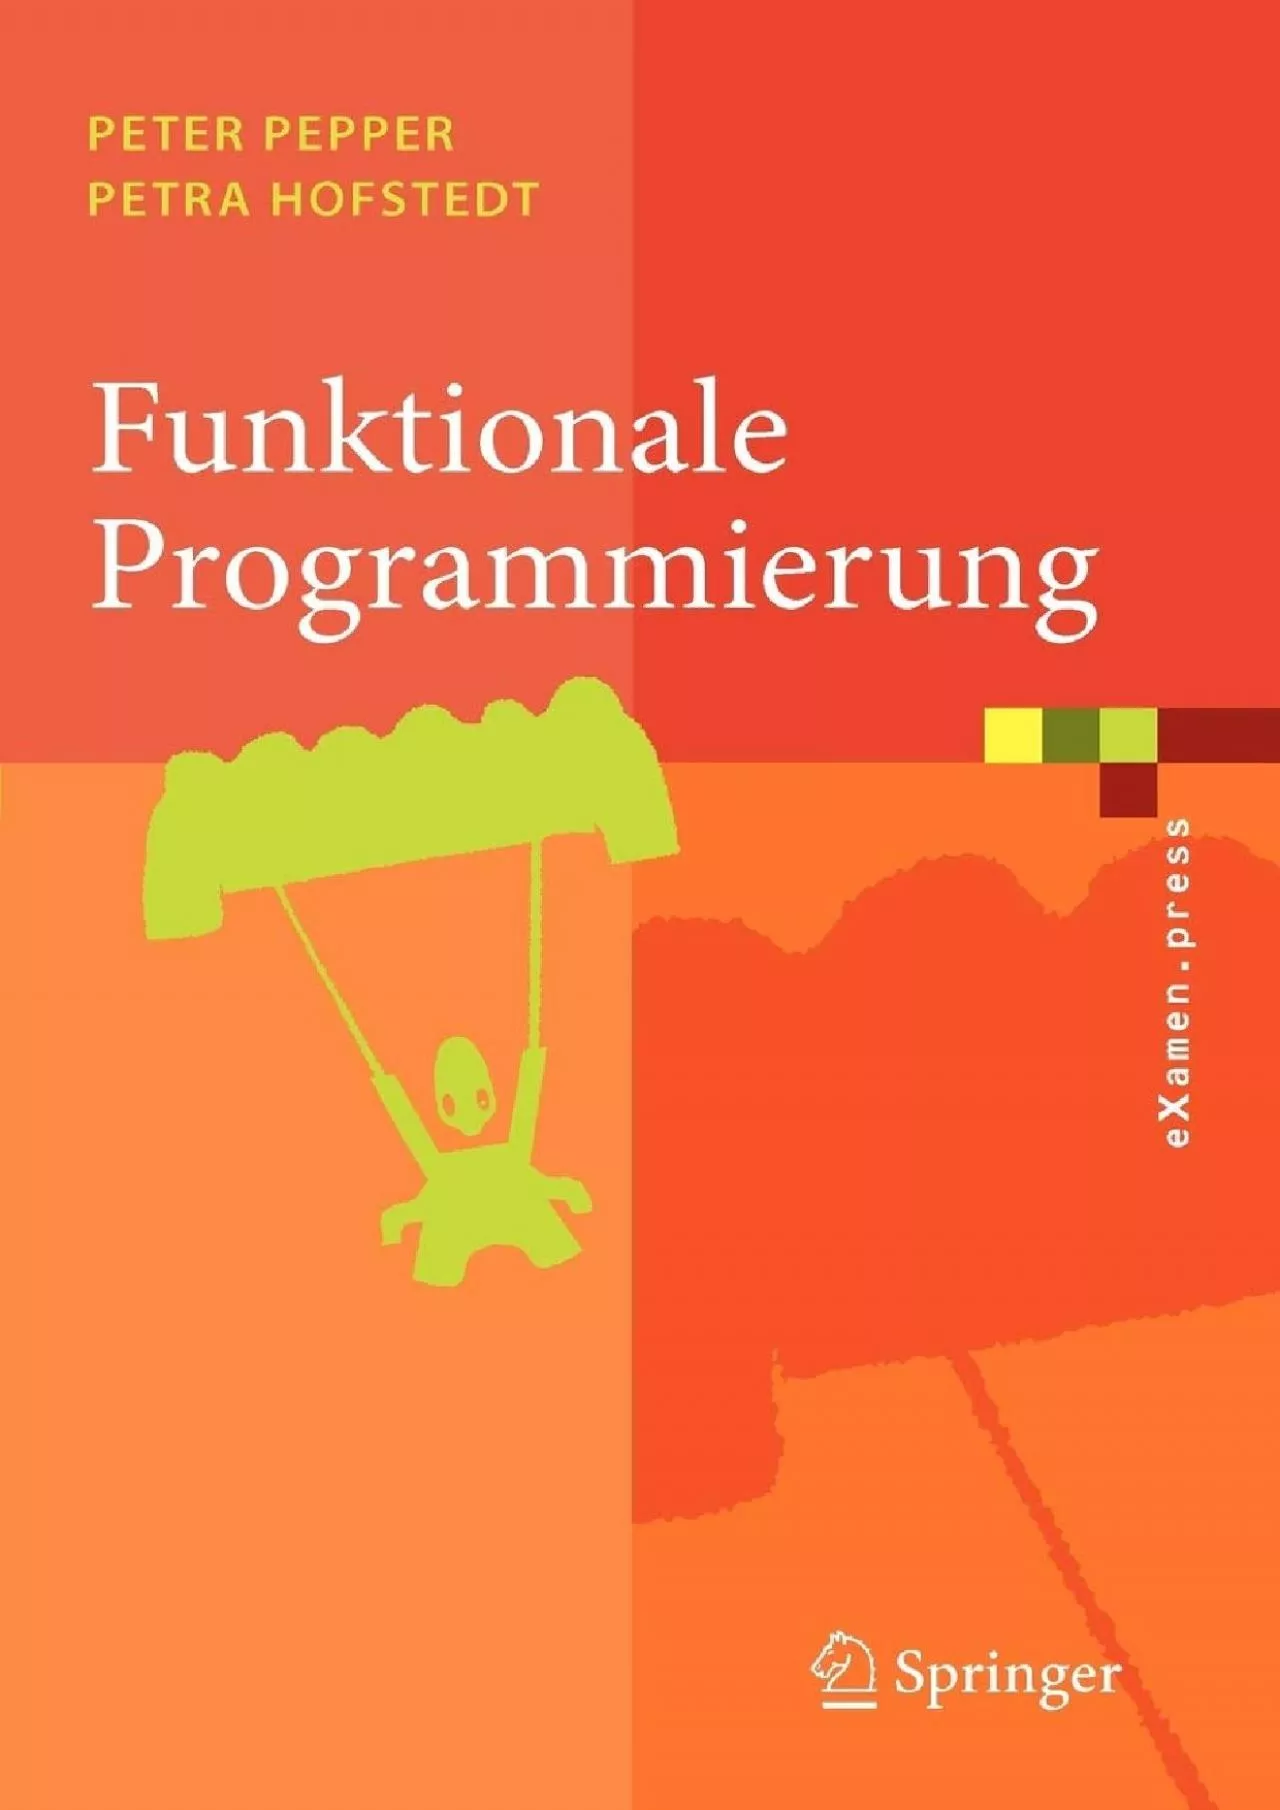 [FREE]-Funktionale Programmierung: Sprachdesign und Programmiertechnik (eXamen.press)